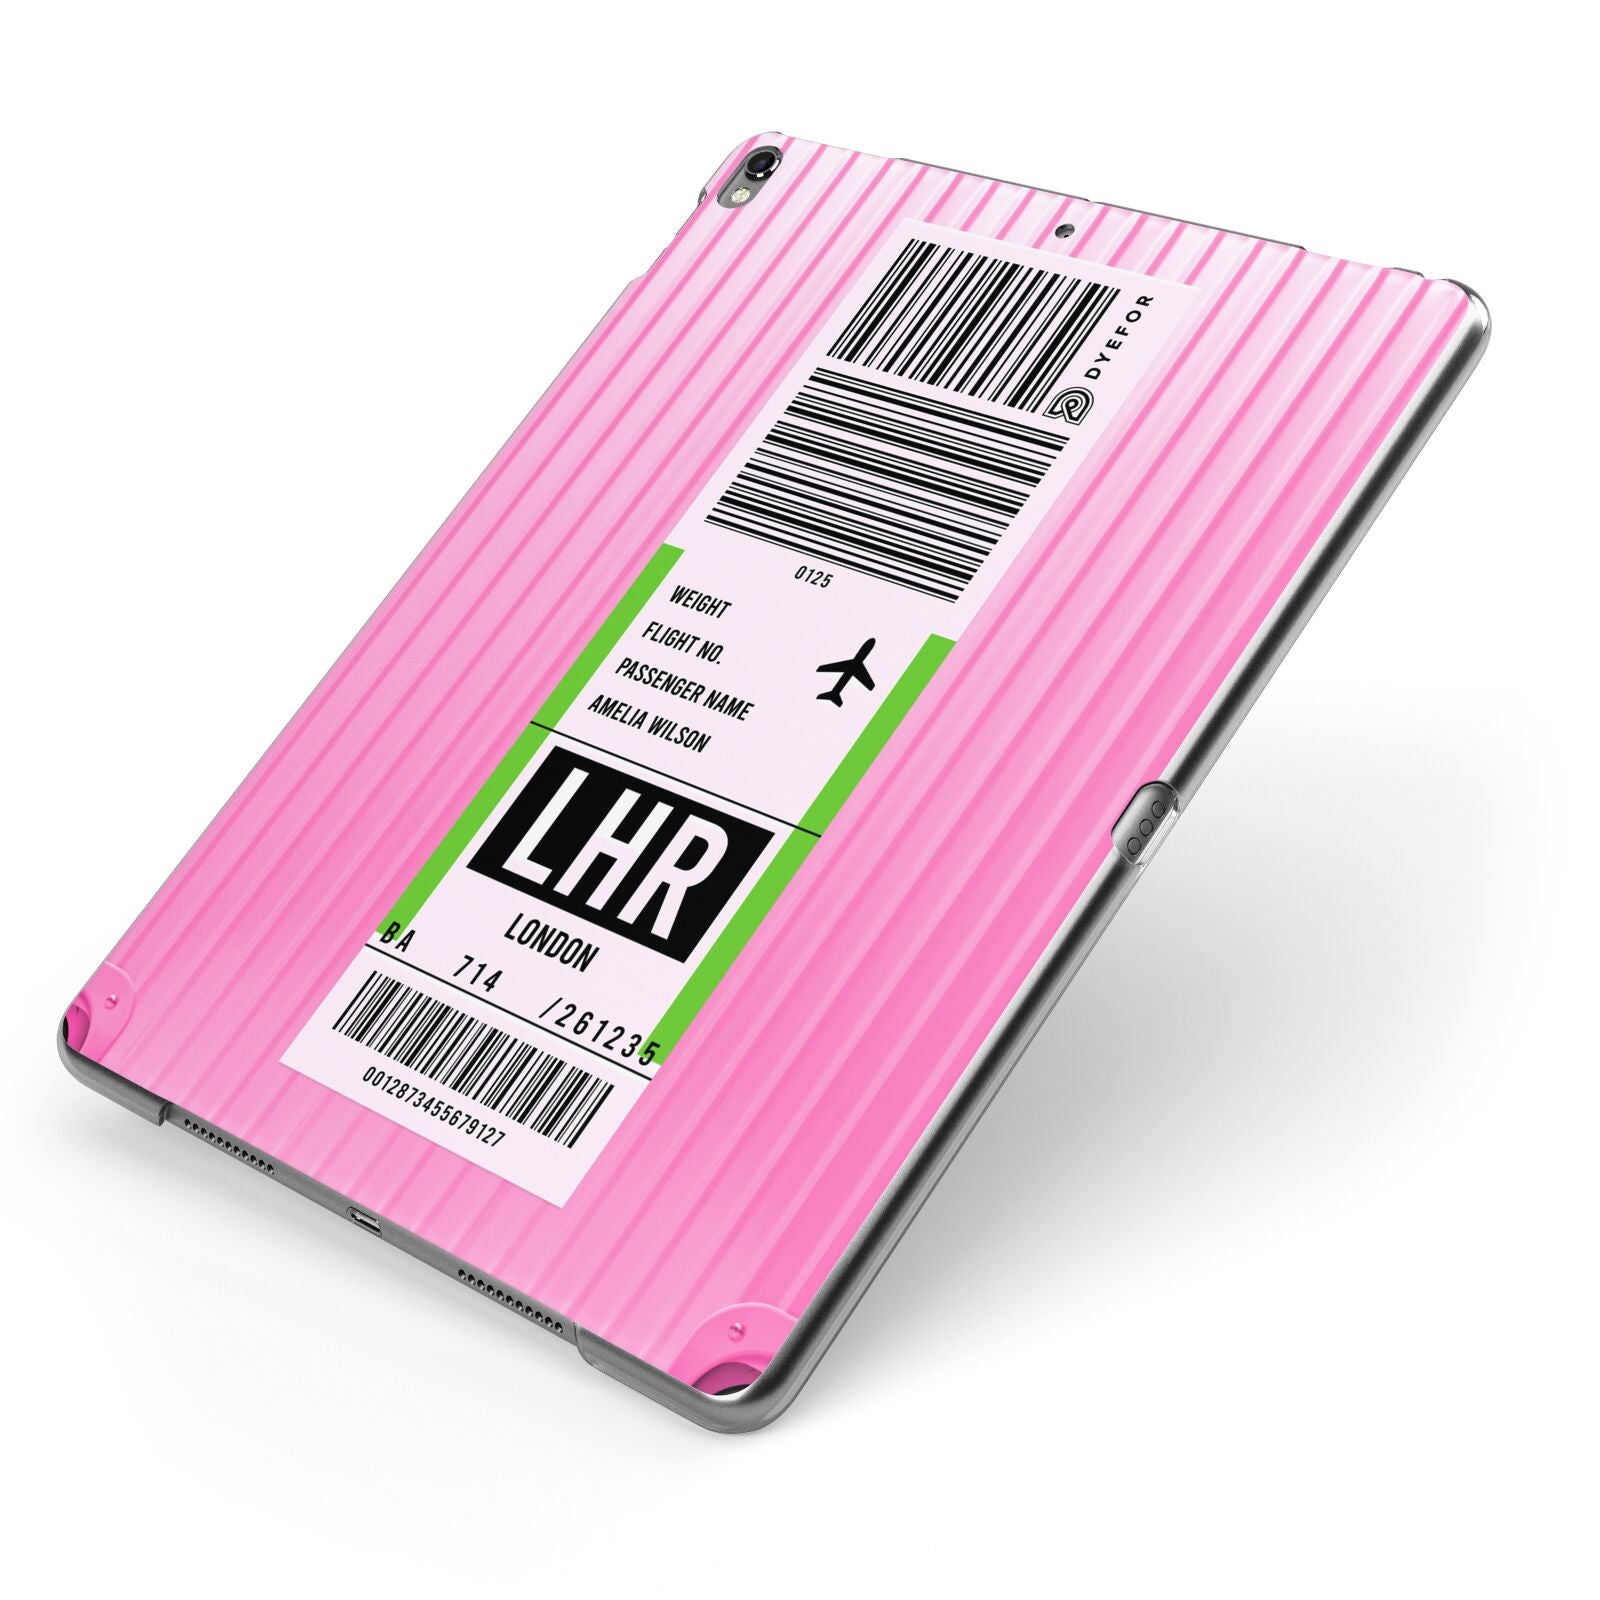 Customised Luggage Tag Apple iPad Case on Grey iPad Side View